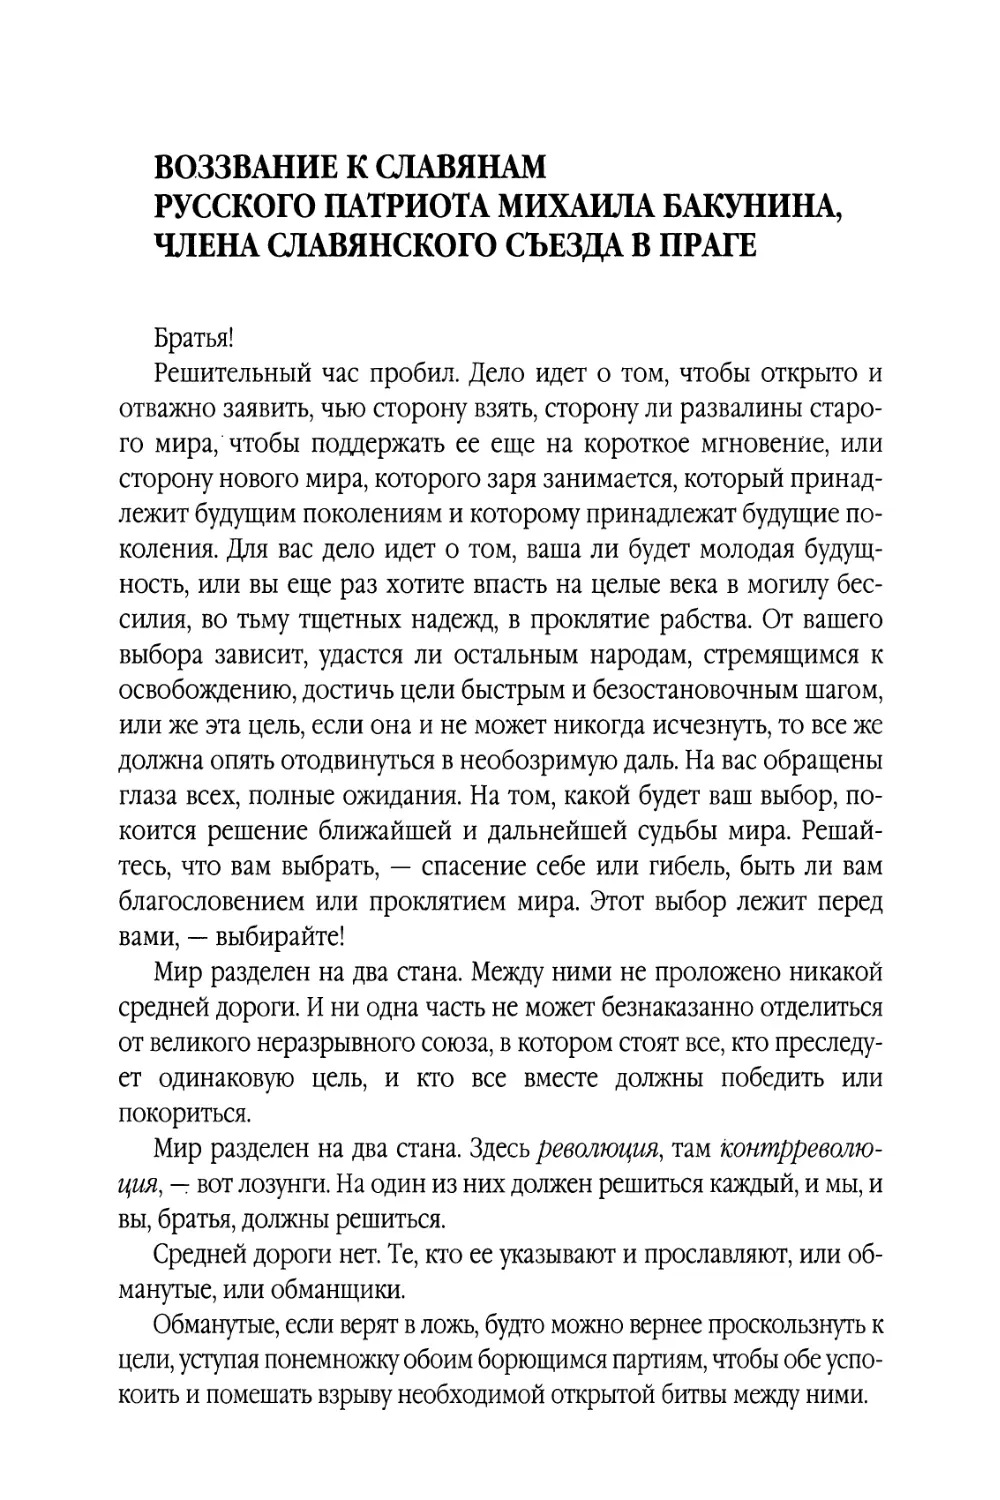 Воззвание к славянам русского патриота Михаила Бакунина, члена Славянского съезда в Праге